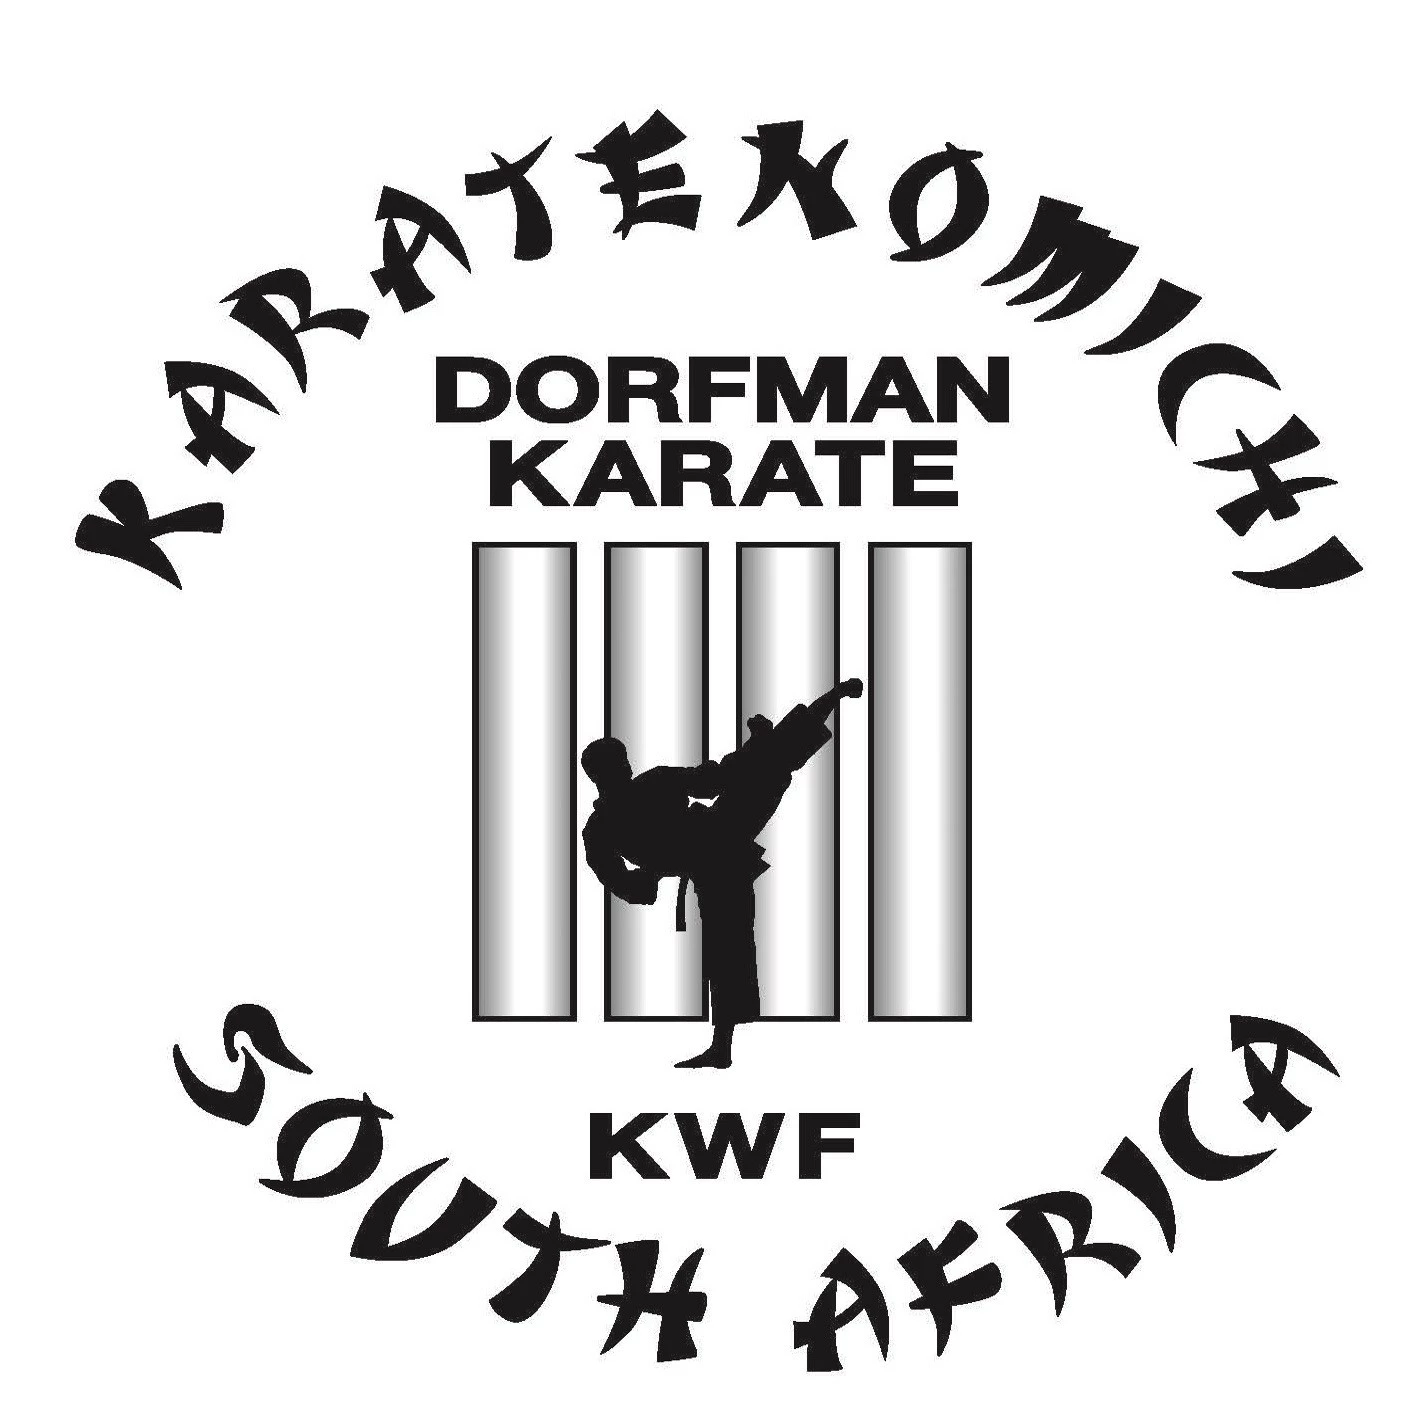 Shane Dorfman Karate